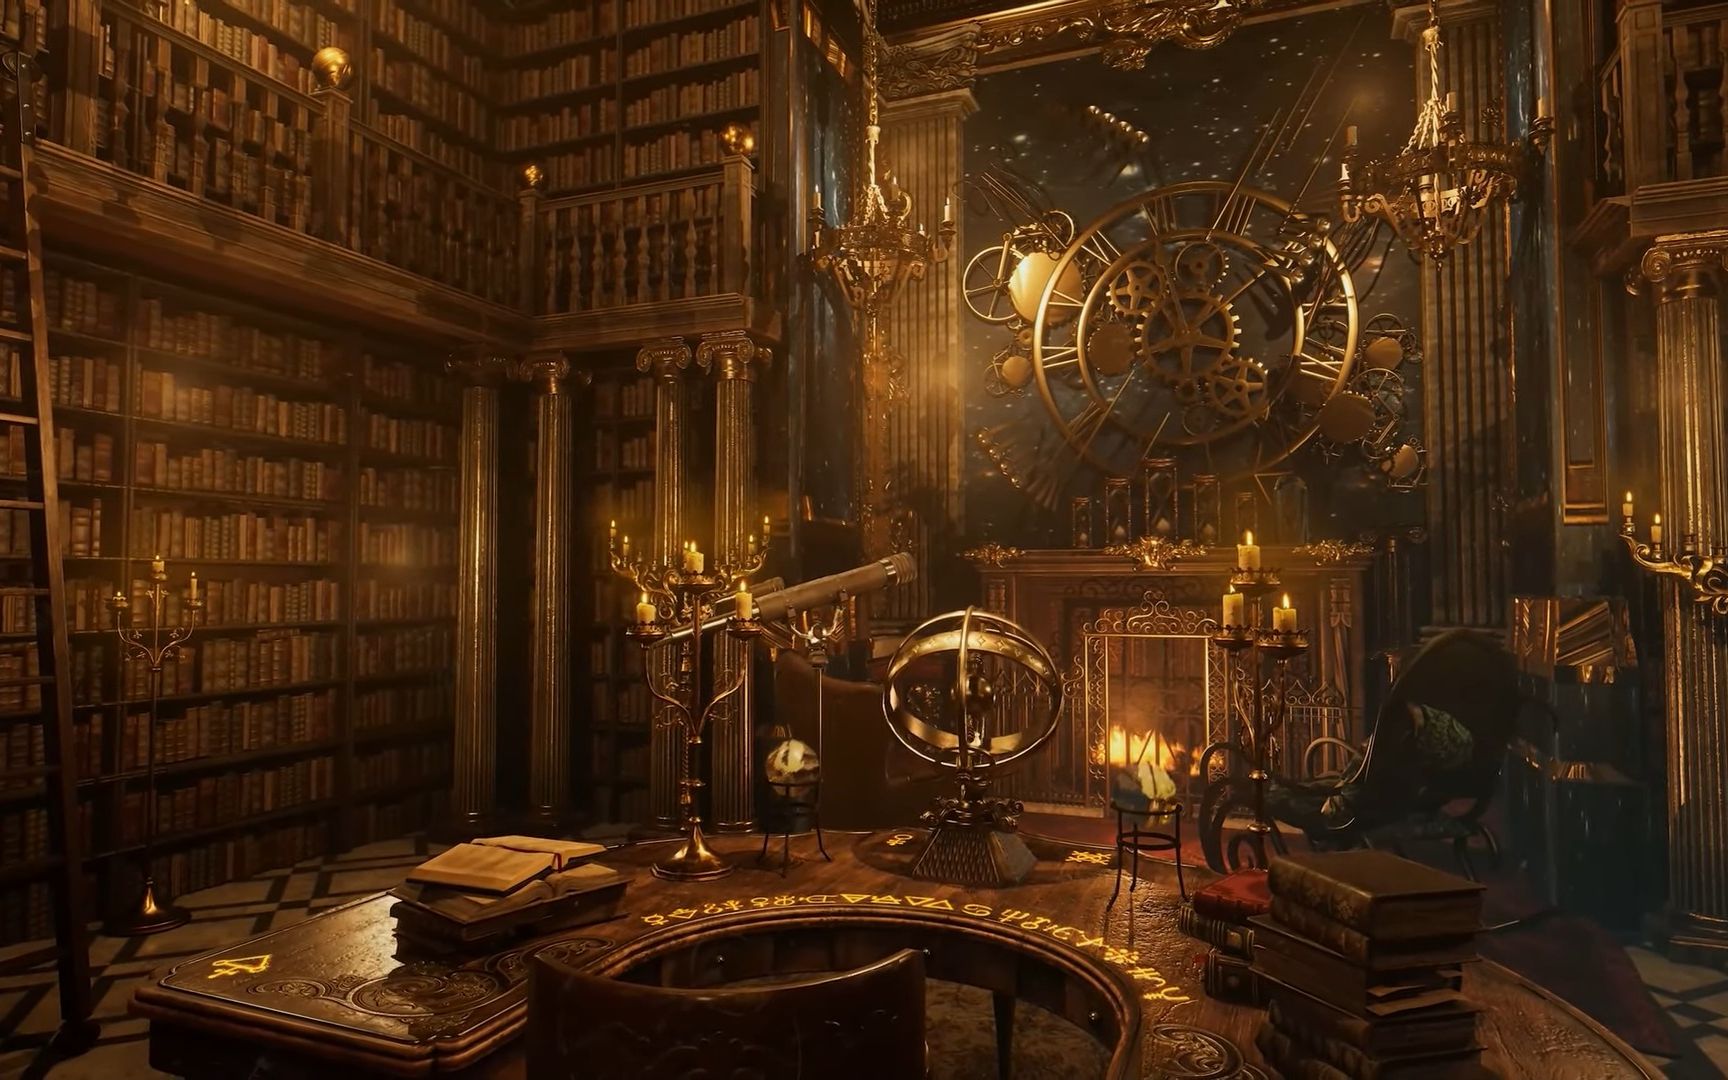 【白噪音|环境音】📡✨维多利亚时代天文学家的华丽图书馆 钟摆齿轮 翻书写字 壁炉 室内氛围音 背景音